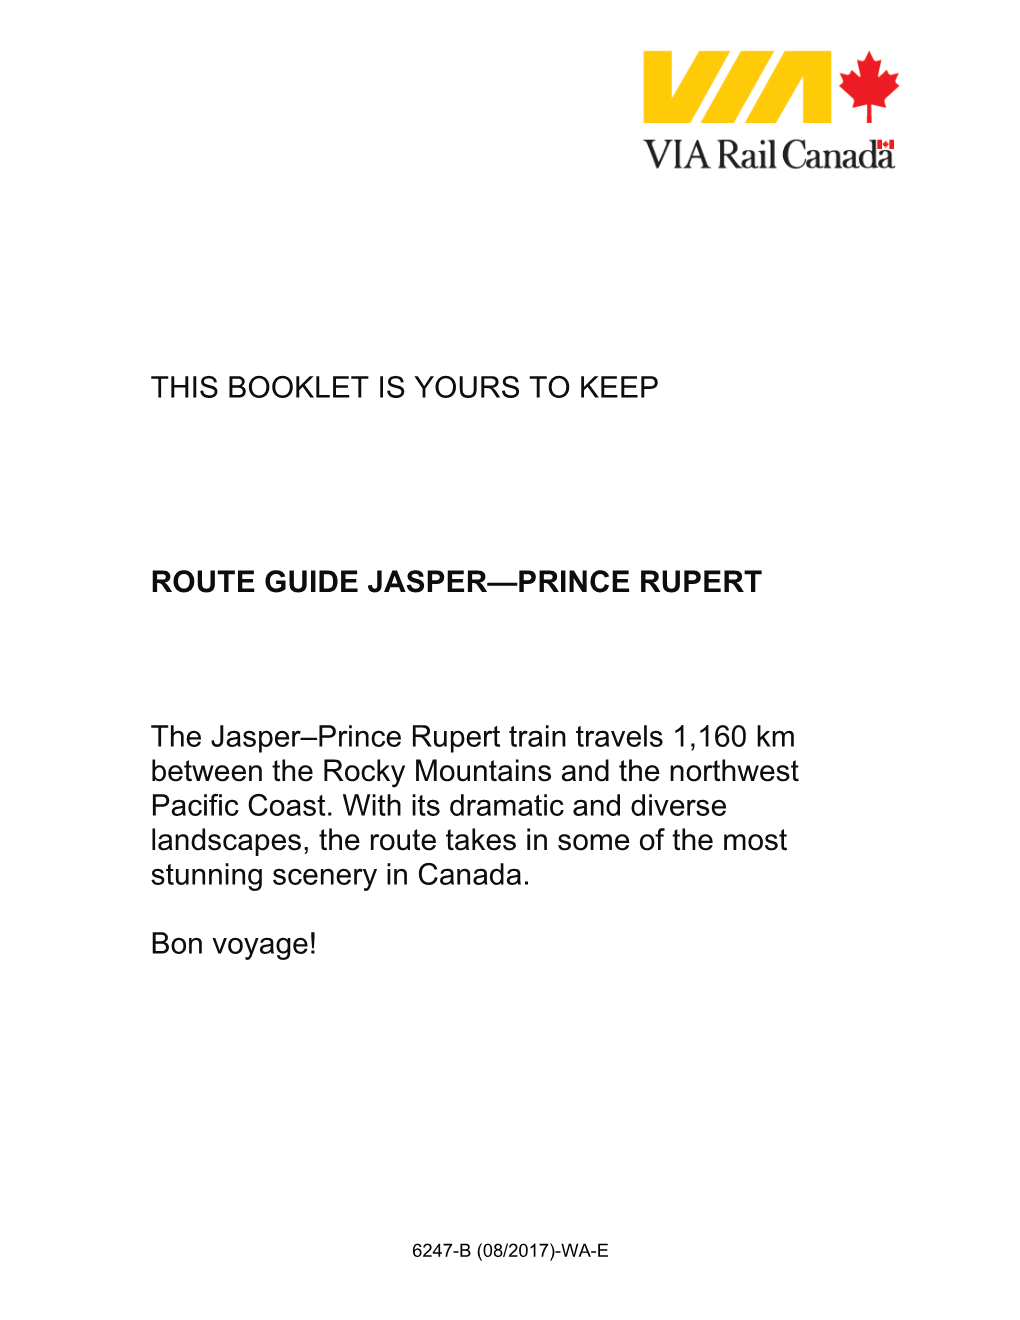 Route Guide Jasper—Prince Rupert